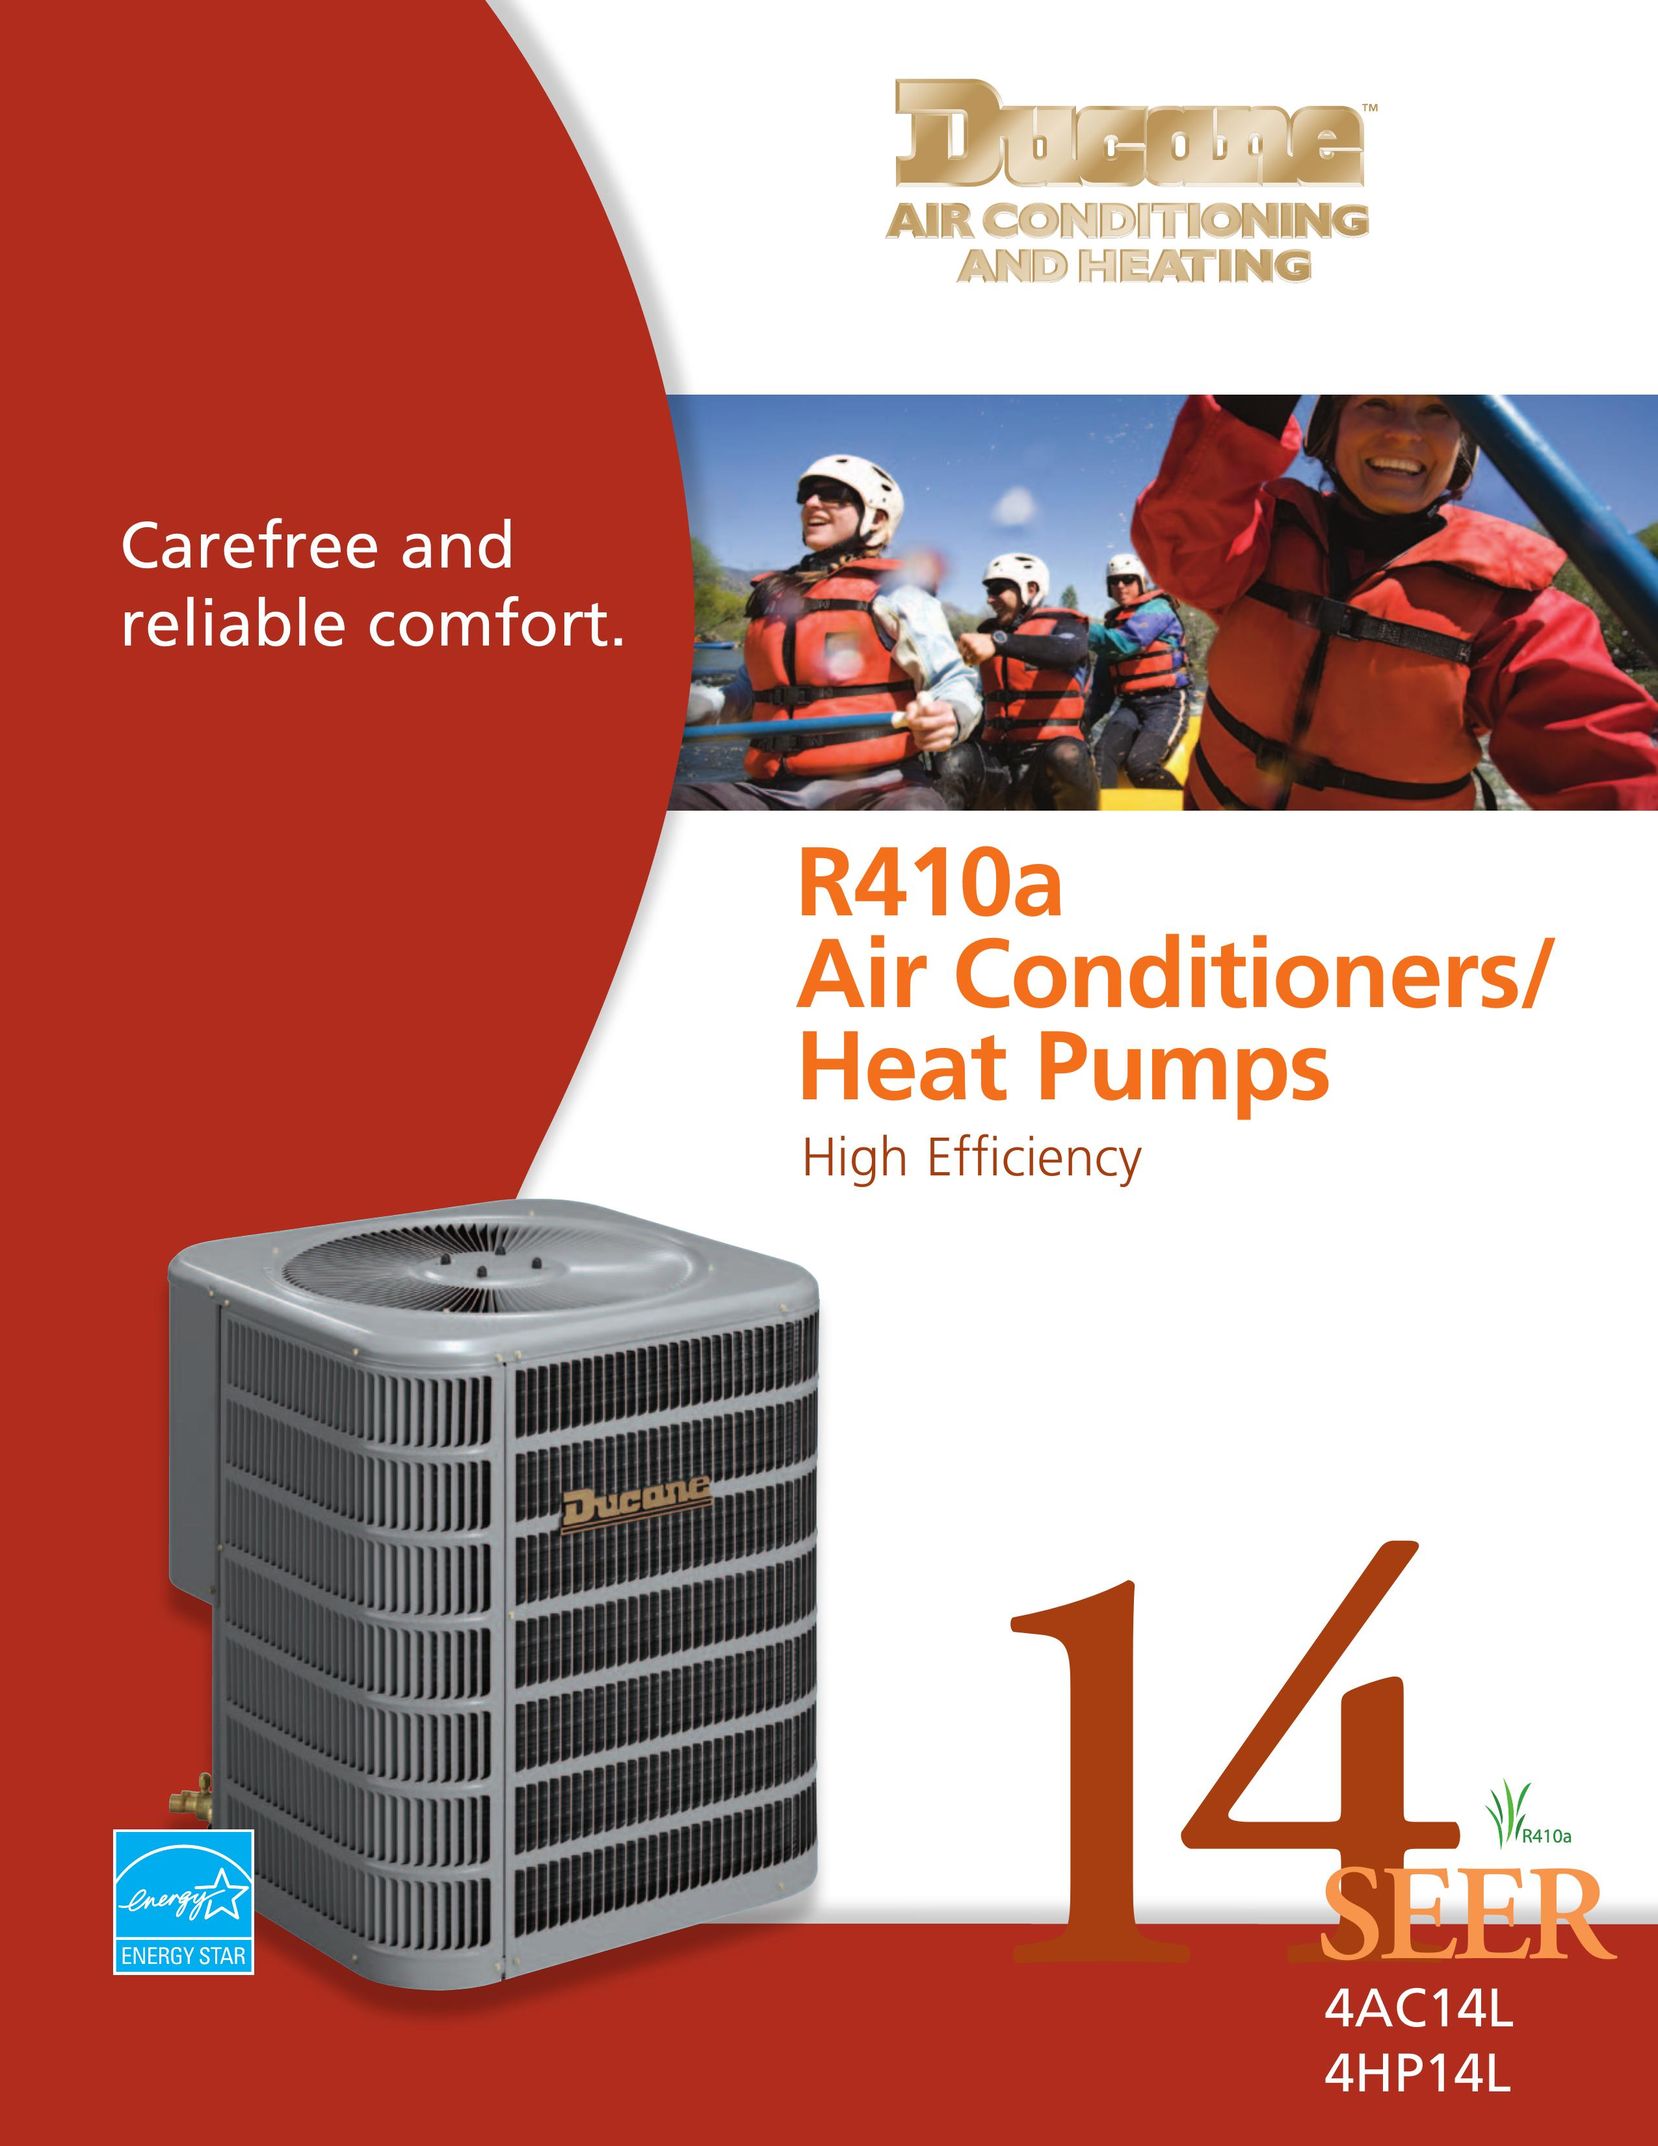 Ducane (HVAC) 4AC14L Air Conditioner User Manual